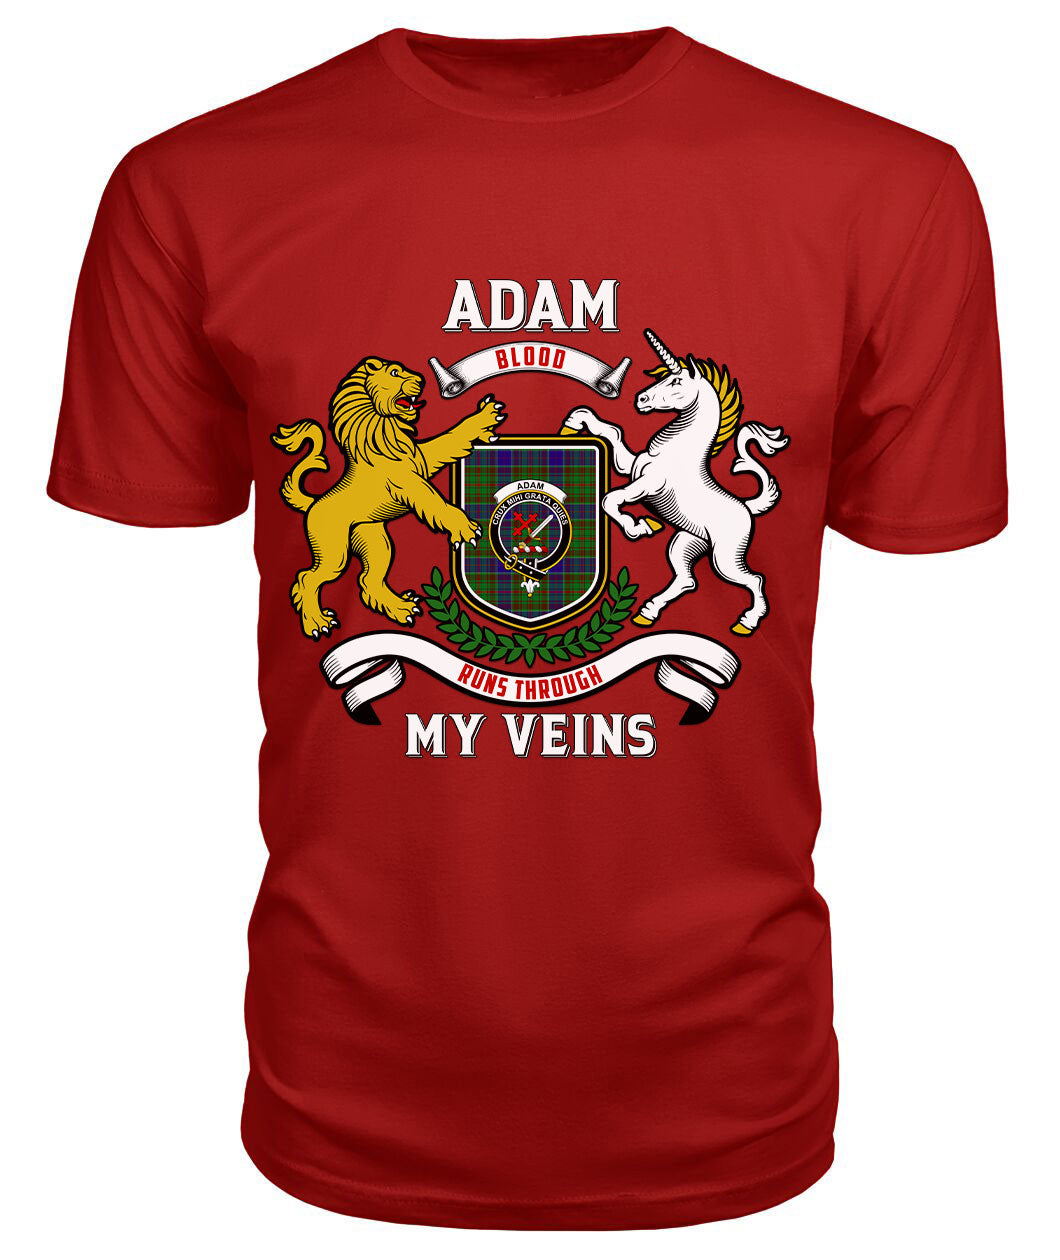 Adam Tartan Crest 2D T-shirt - Blood Runs Through My Veins Style